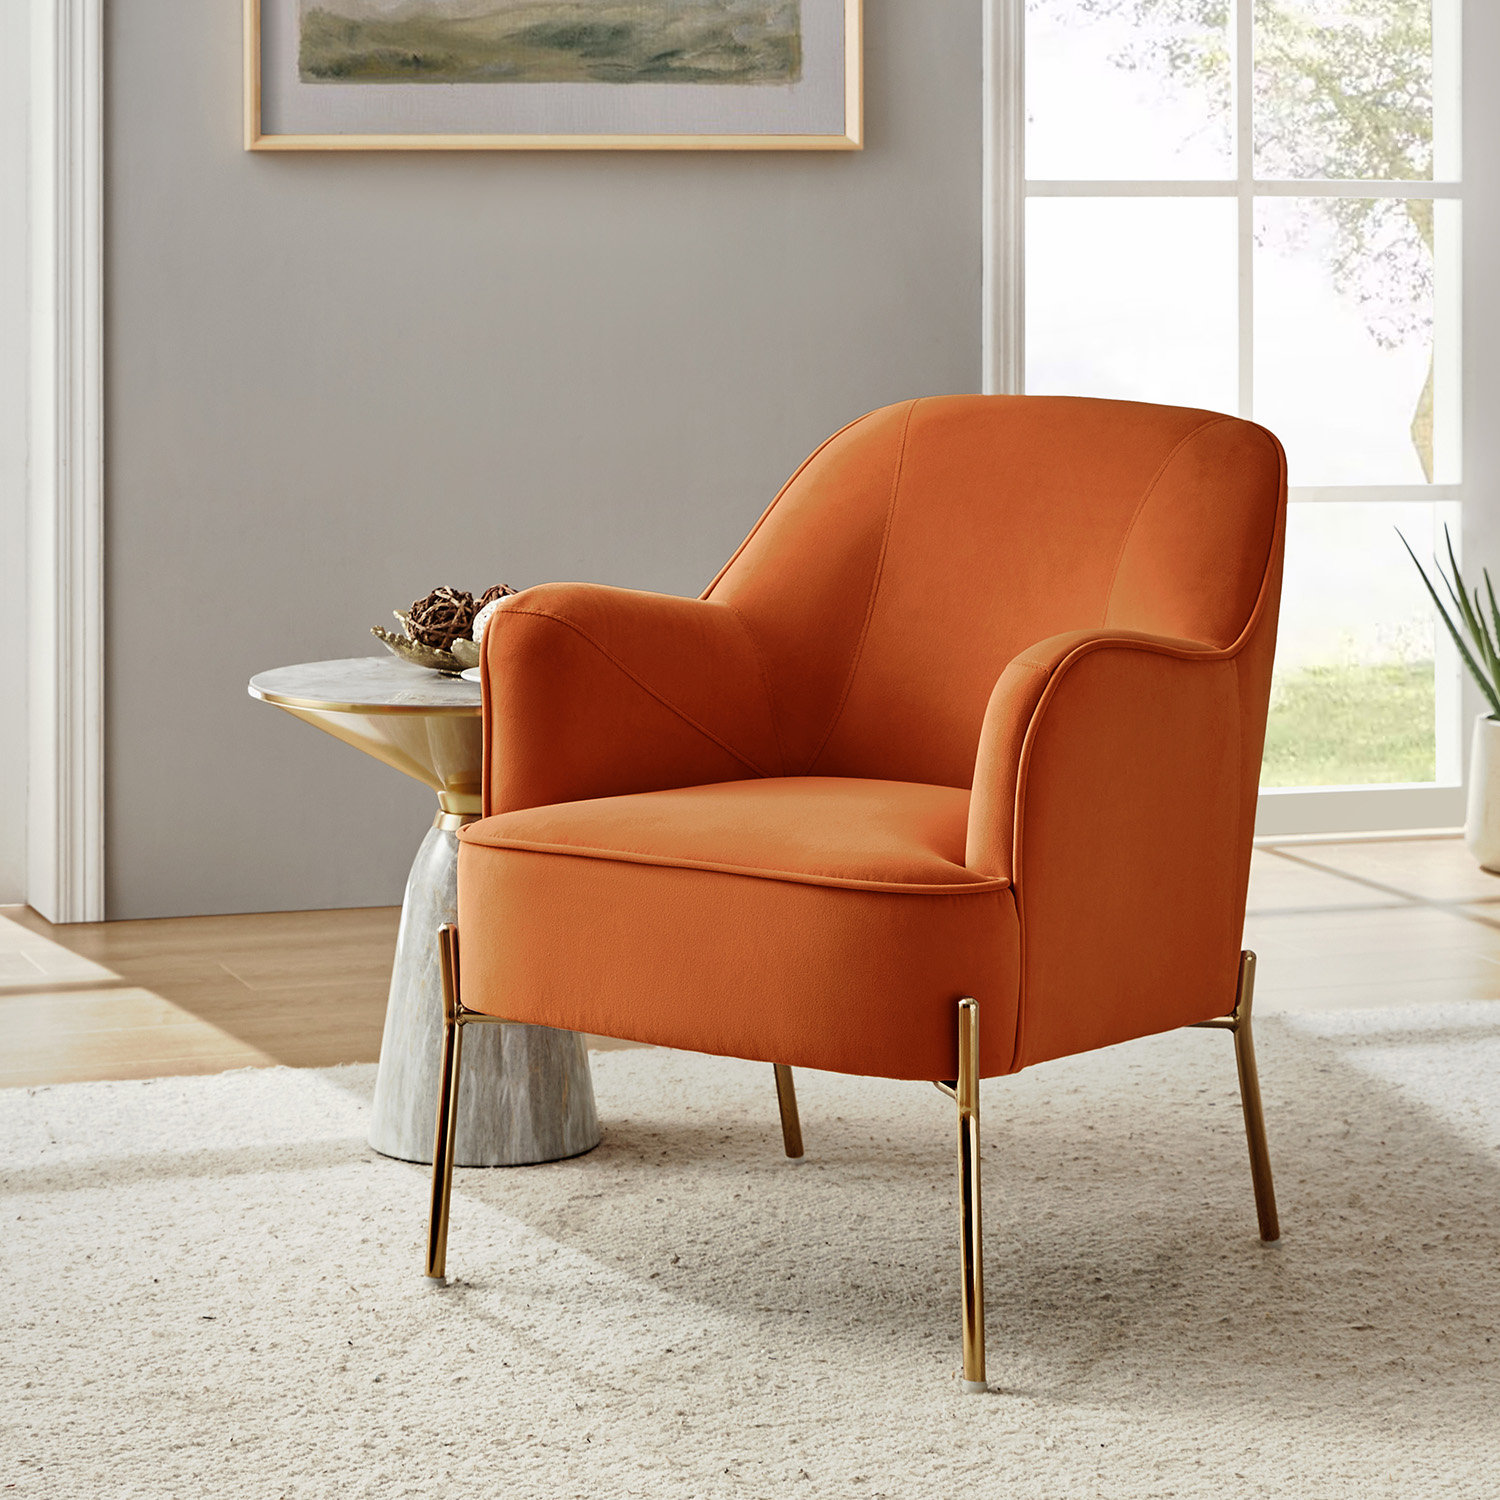 Stitch dining armchair & designer furniture